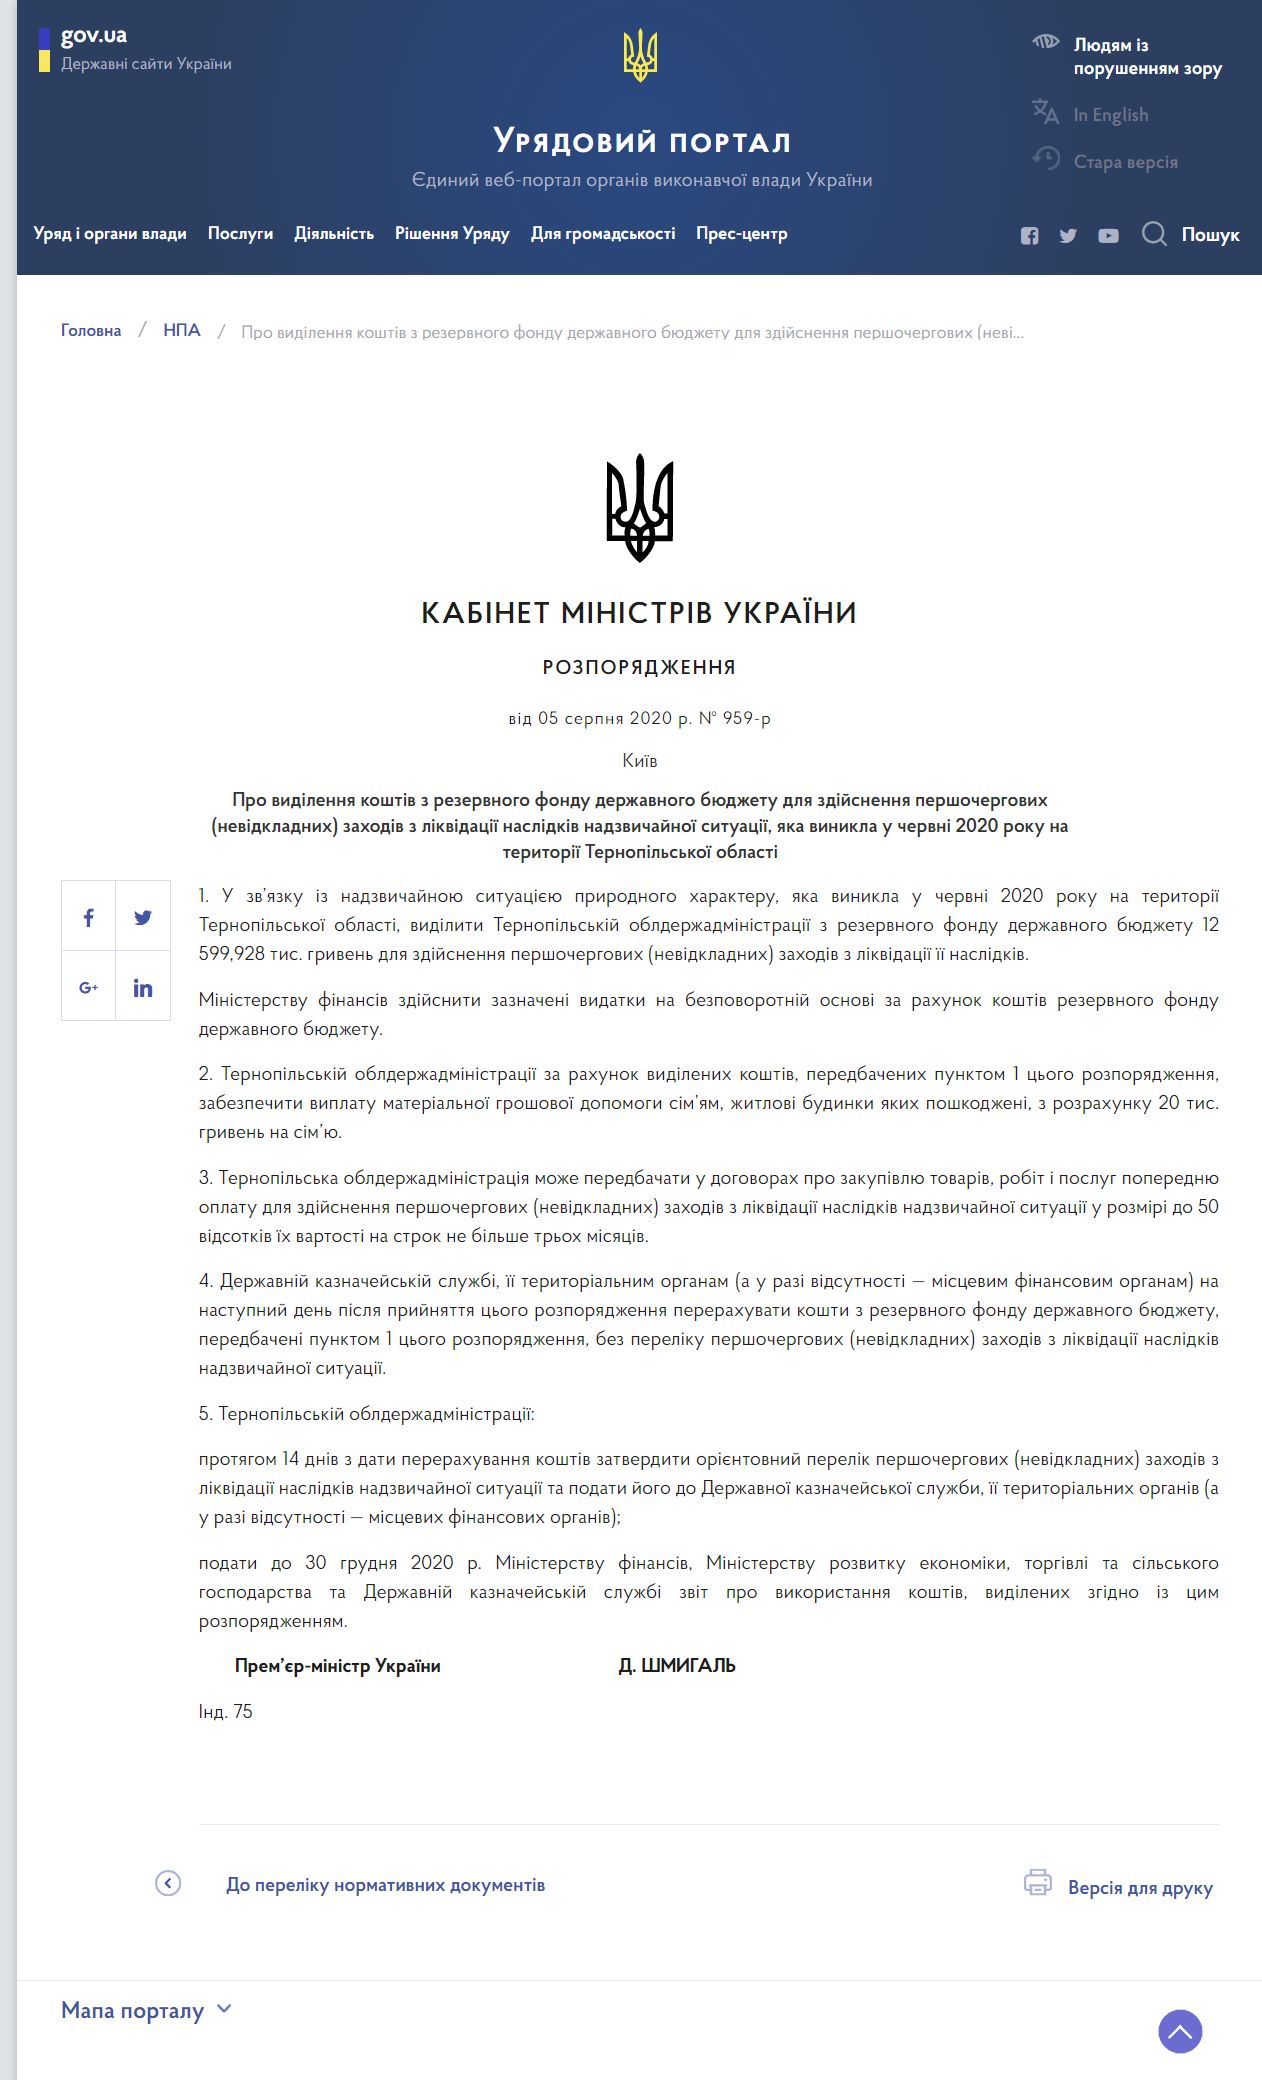 https://www.kmu.gov.ua/npas/pro-vidilennya-koshtiv-z-rezervnogo-fondu-derzhavnogo-byudzhetu-dlya-zdijsnennya-pershochergovih-t50820